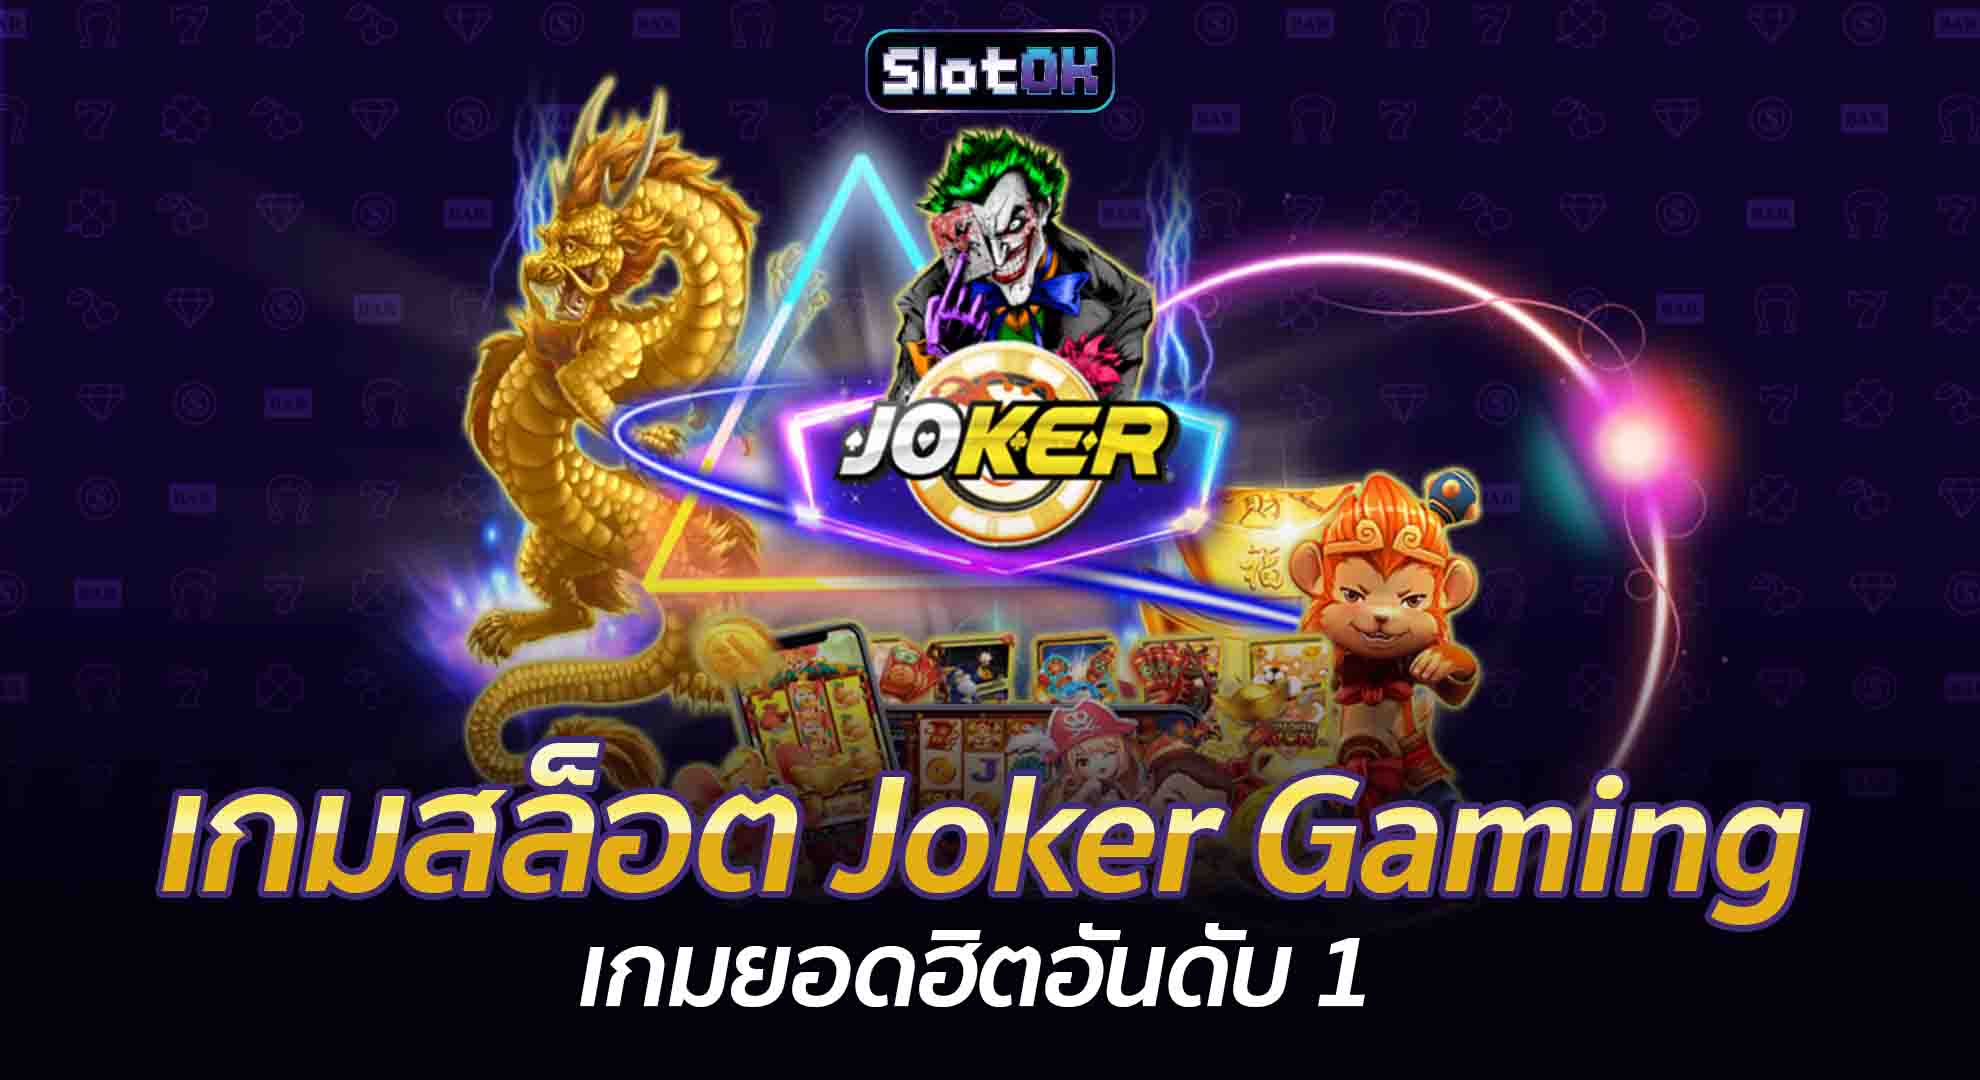 เกมสล็อต Joker Gaming เกมยอดฮิตอันดับ 1 SlotOK สล็อตออนไลน์ โปรโมชั่นสล็อต สมัครสล็อต สล็อตโอเค ทางเข้าเล่นสล็อต สมัครสมาชิก ทางเข้าเล่น Slot โปรโมชั่น เกมสล็อต OK PG Slot